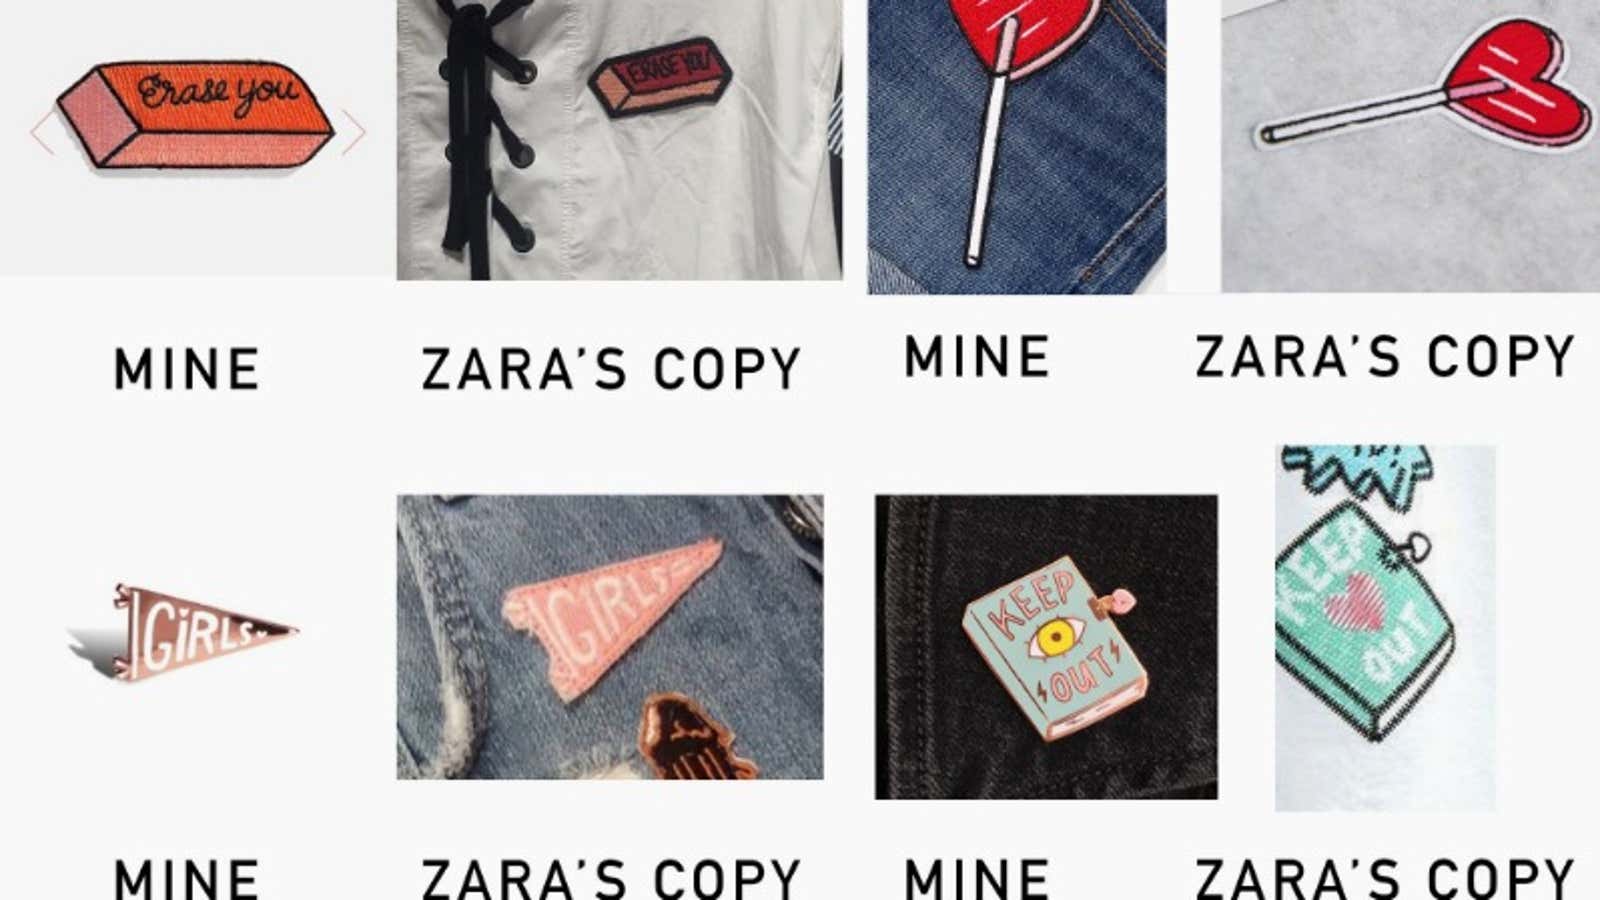 The designs Bassen claims Zara copied.